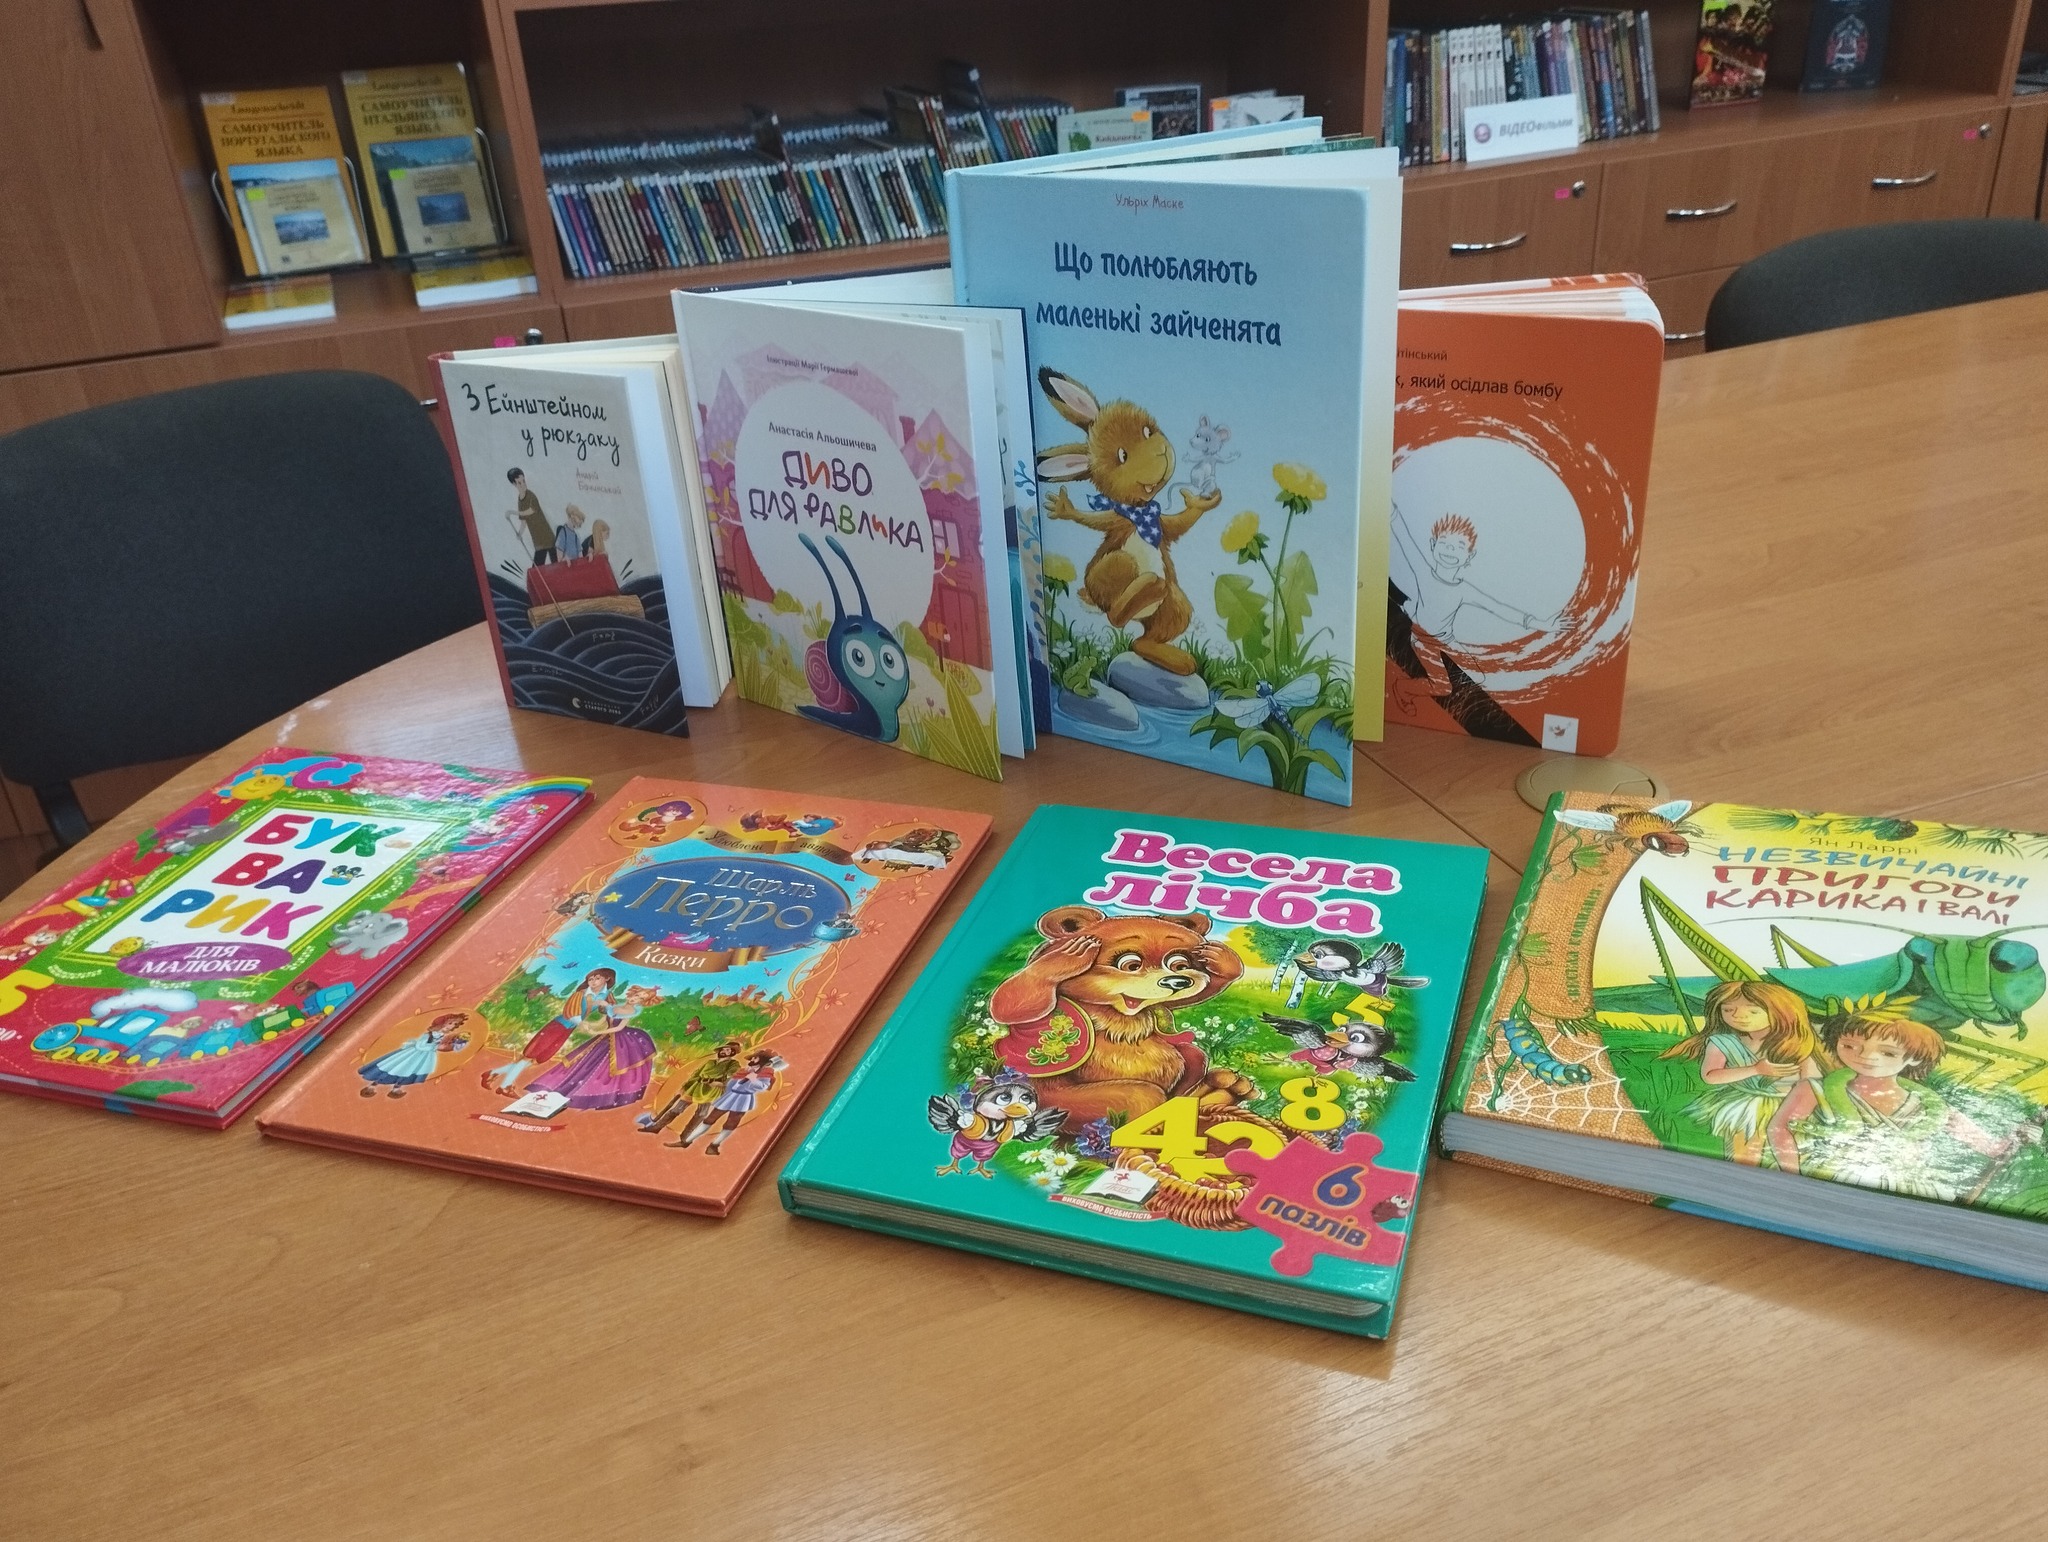 Підприємство "НІБУЛОН" з нагоди Міжнародного дня захисту дітей передала до книжкового фонду партію дитячої літератури